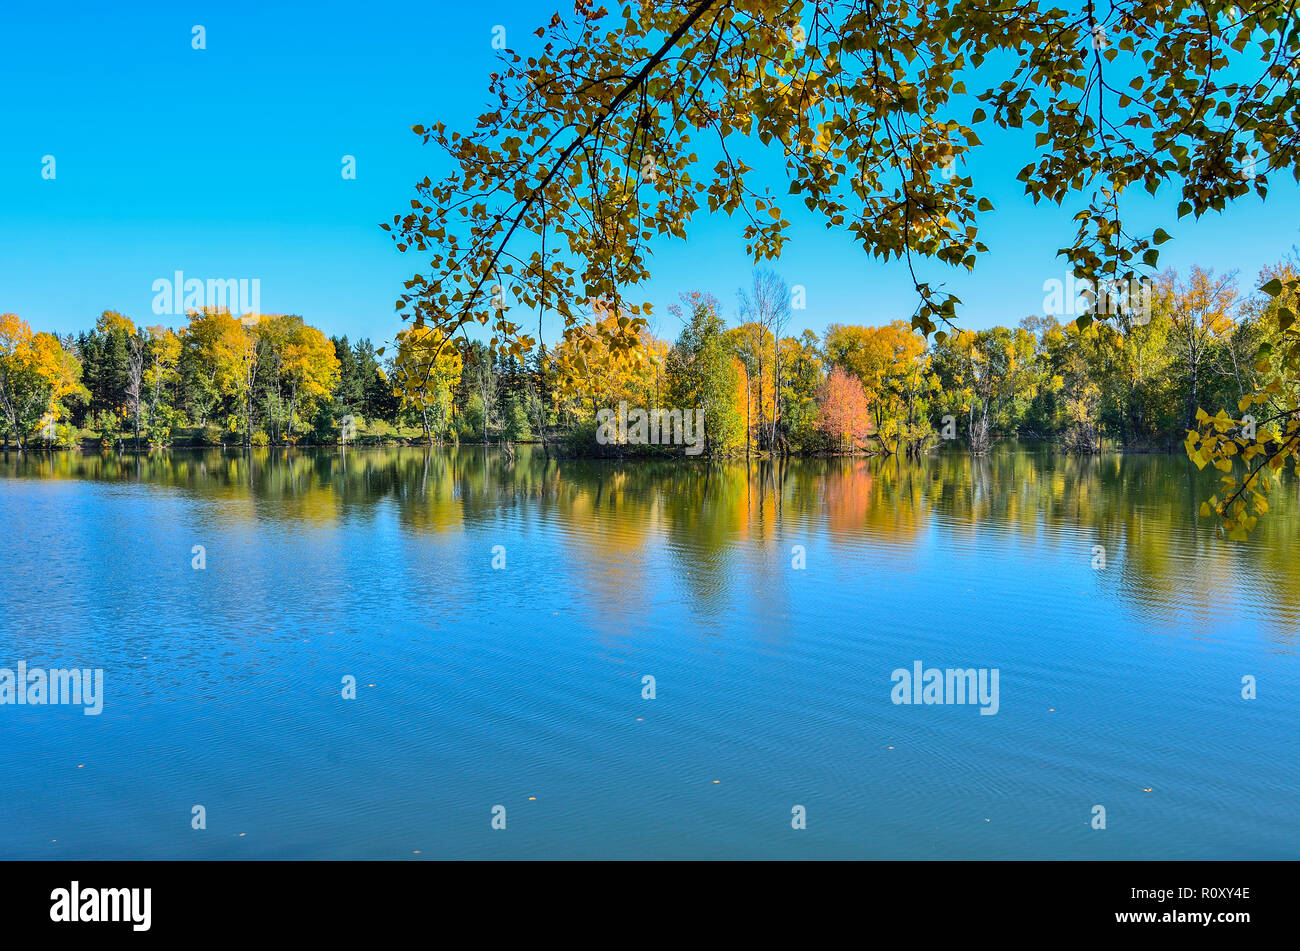 Warme, sonnige September Landschaft am Ufer des Sees. Blauer Himmel und goldenen Laub der Bäume auf der Oberfläche des Wassers wider, der Schönheit der Natur im Herbst Stockfoto